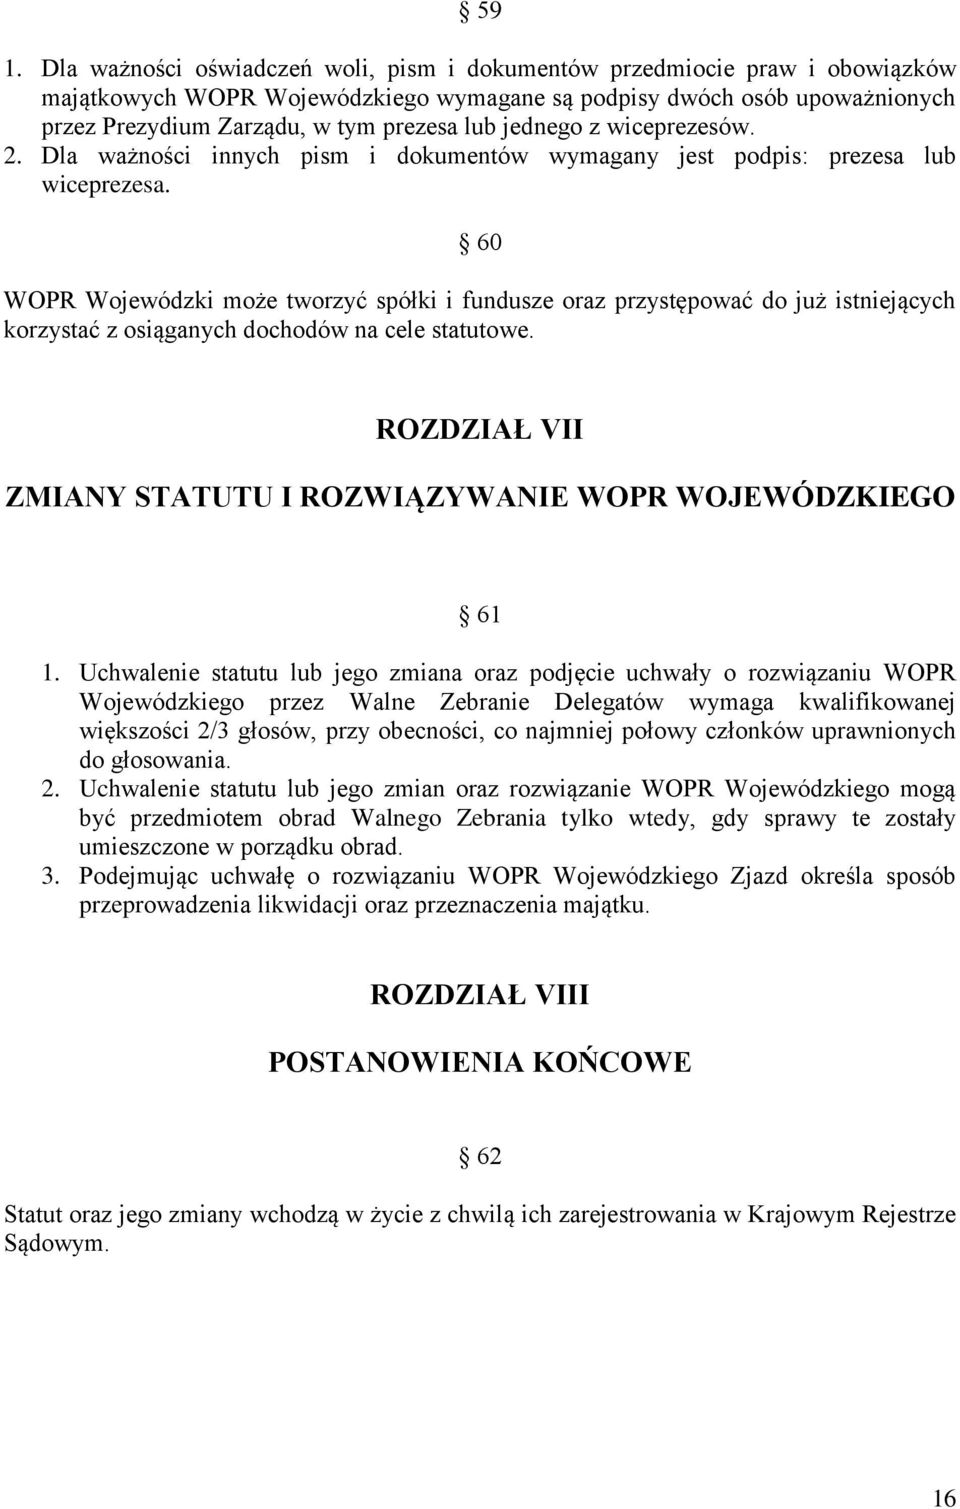 60 WOPR Wojewódzki może tworzyć spółki i fundusze oraz przystępować do już istniejących korzystać z osiąganych dochodów na cele statutowe.